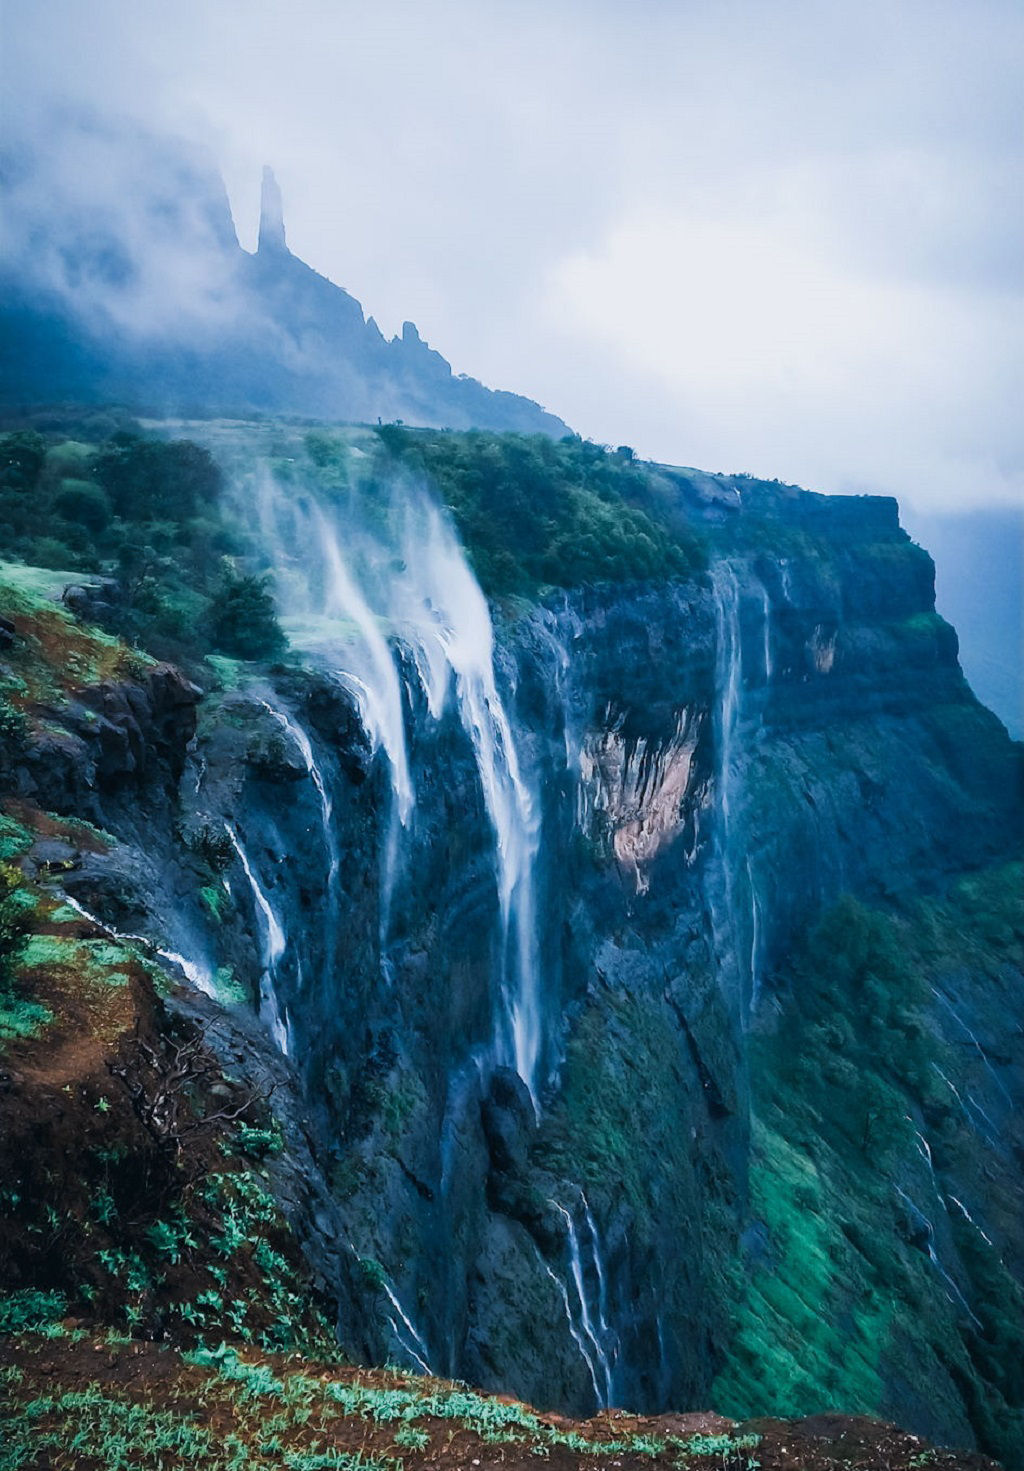 As cachoeiras reversas indianas: quando a gua 'cai' para cima